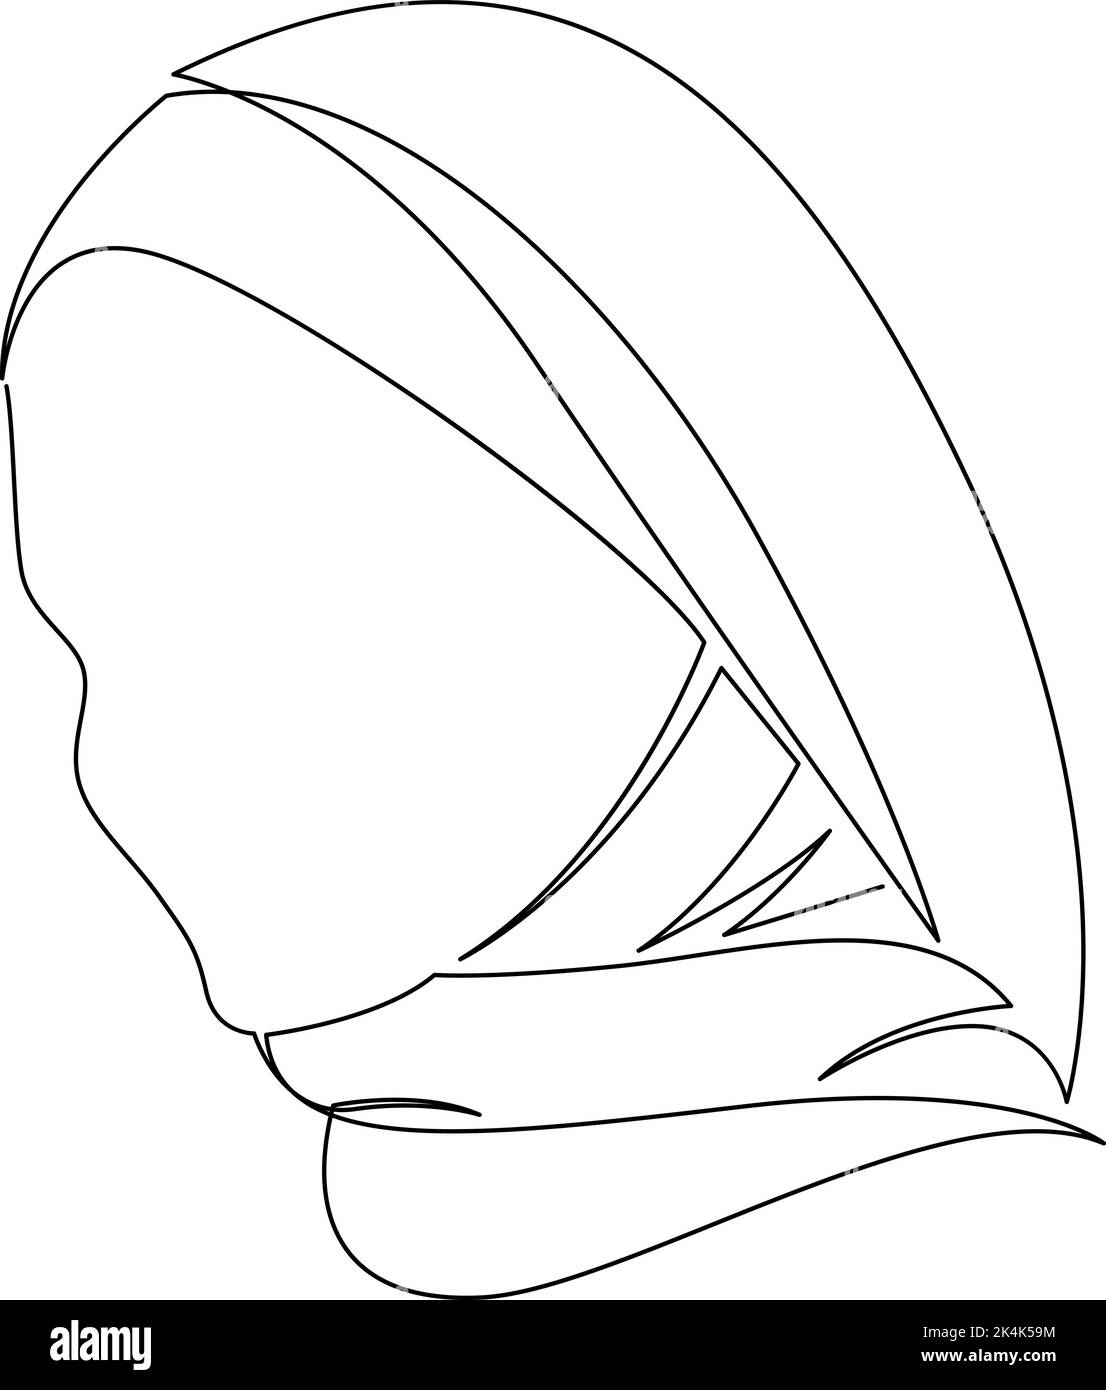 Dessin continu d'une ligne de femme musulmane. Hijab foulard portrait dessin à la main. Illustration vectorielle Illustration de Vecteur